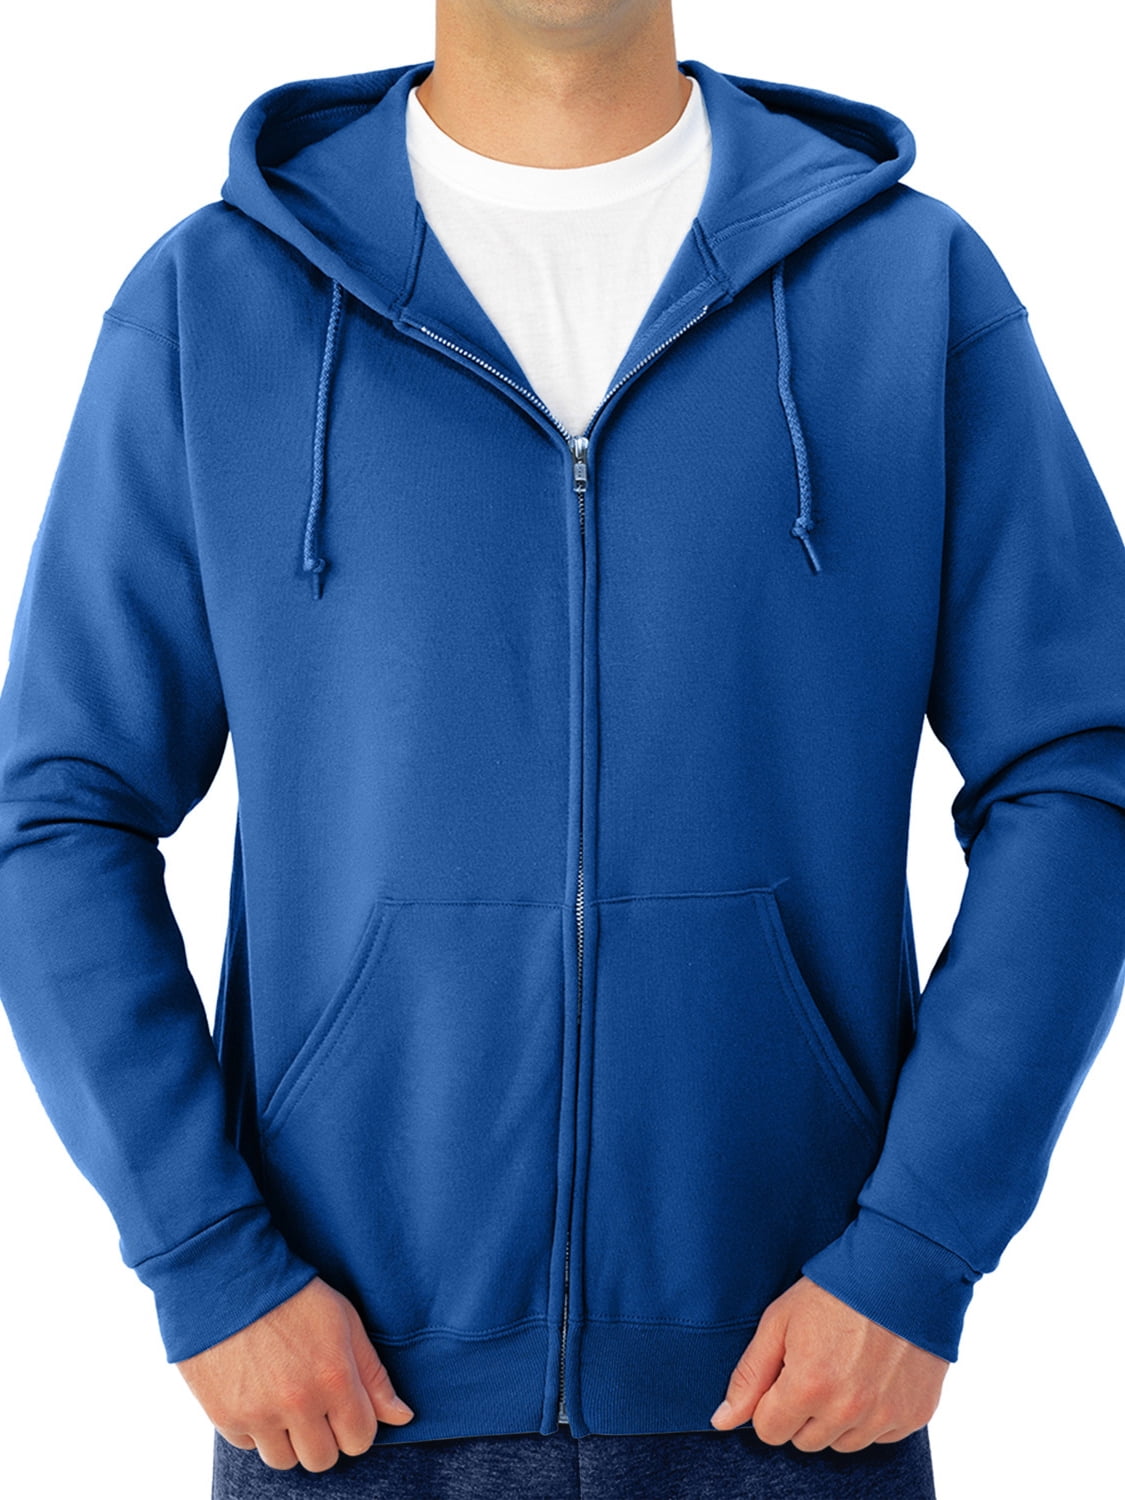 bout Pijnboom Koreaans Jerzees Men's and Big Men's Fleece Full Zip Hooded Jacket, Up to Size 3XL -  Walmart.com